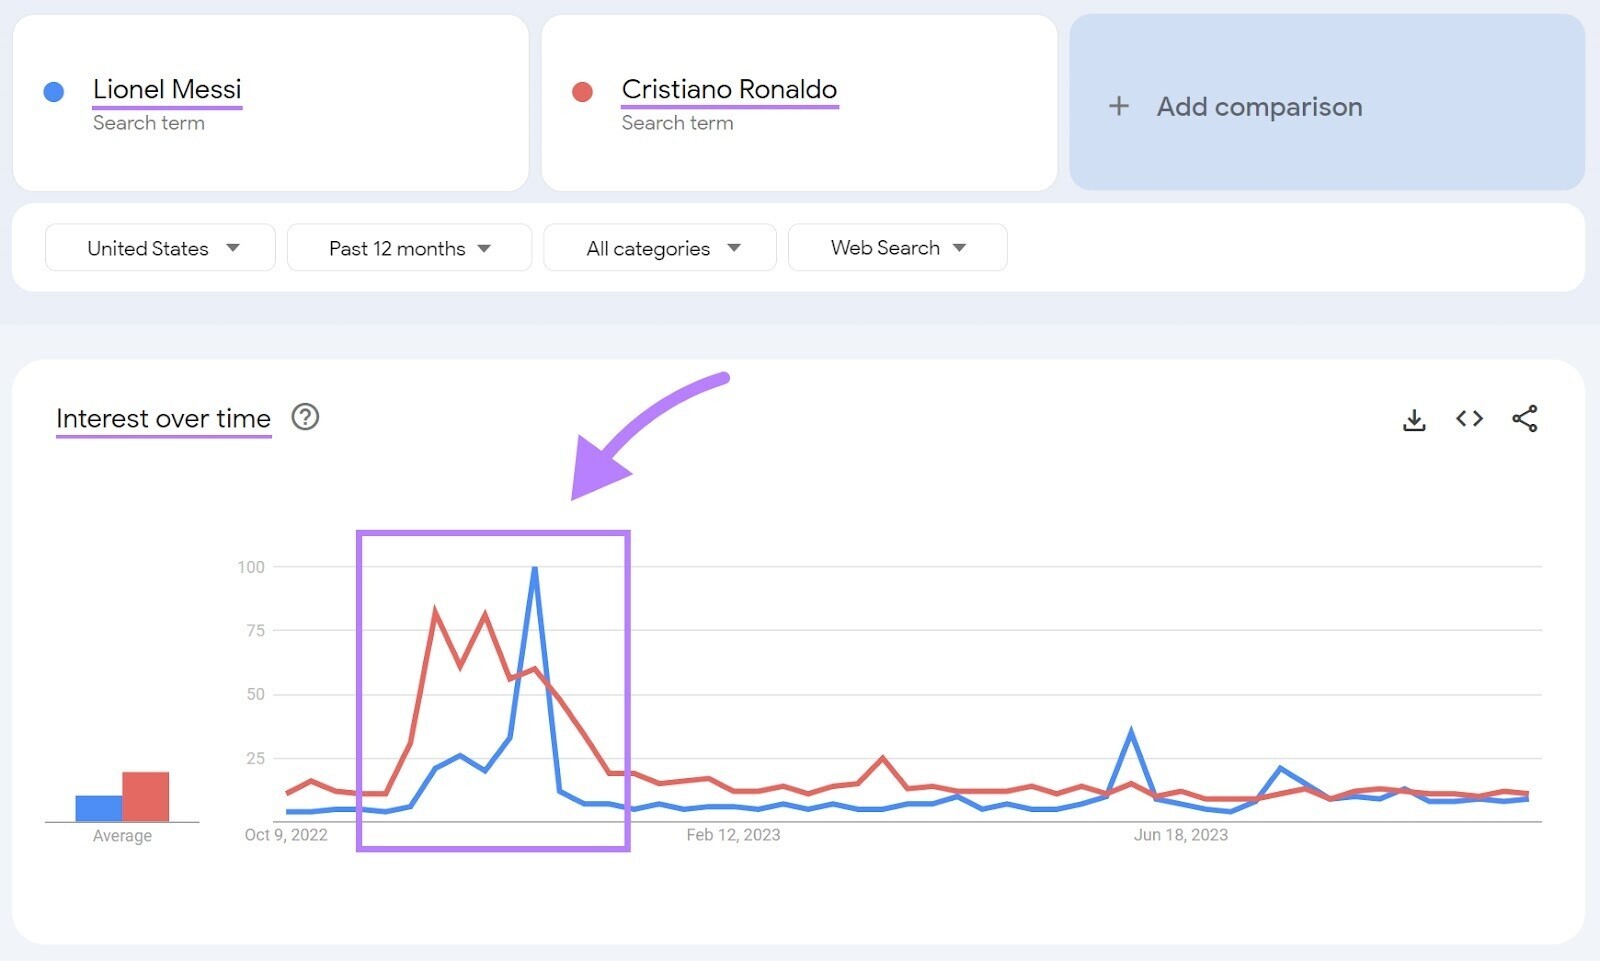 Graphique d'intérêt de Google Trends au fil du temps montrant les résultats de Lionel Messi et Cristiano Ronaldo